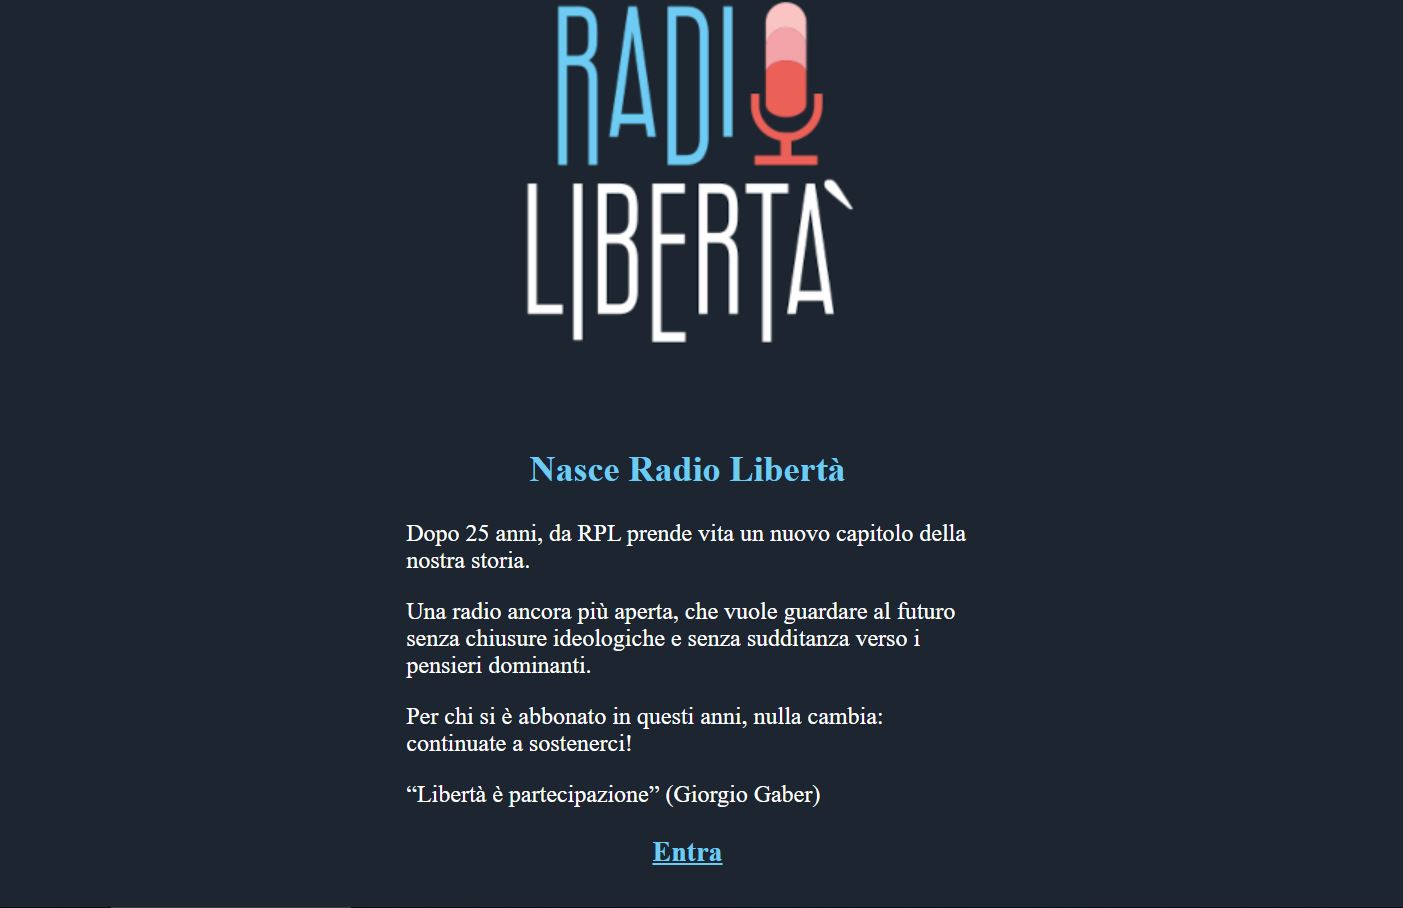 L'annuncio del passaggio a Radio Libertà